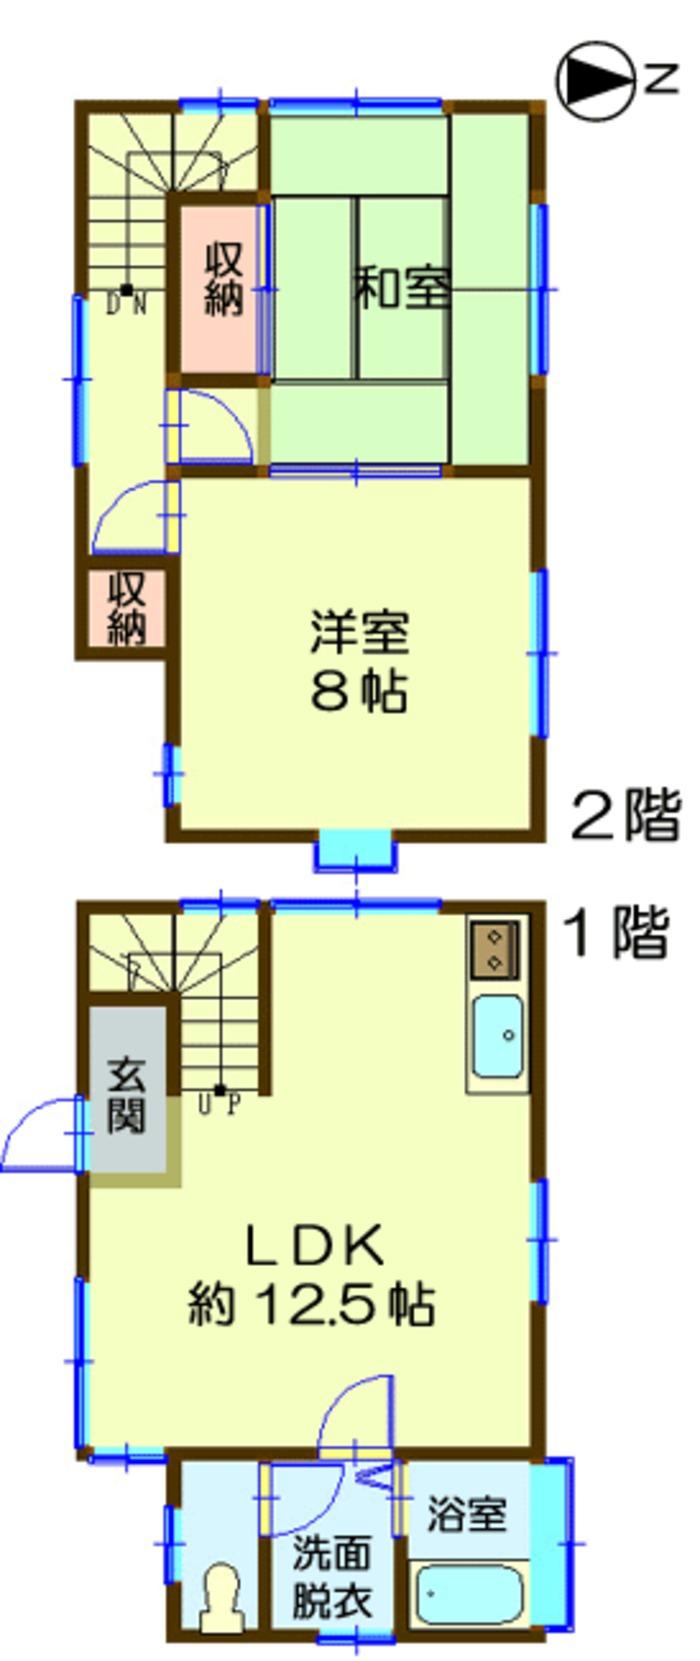 Floor plan. 4.5 million yen, 2LDK, Land area 128 sq m , Building area 62.92 sq m